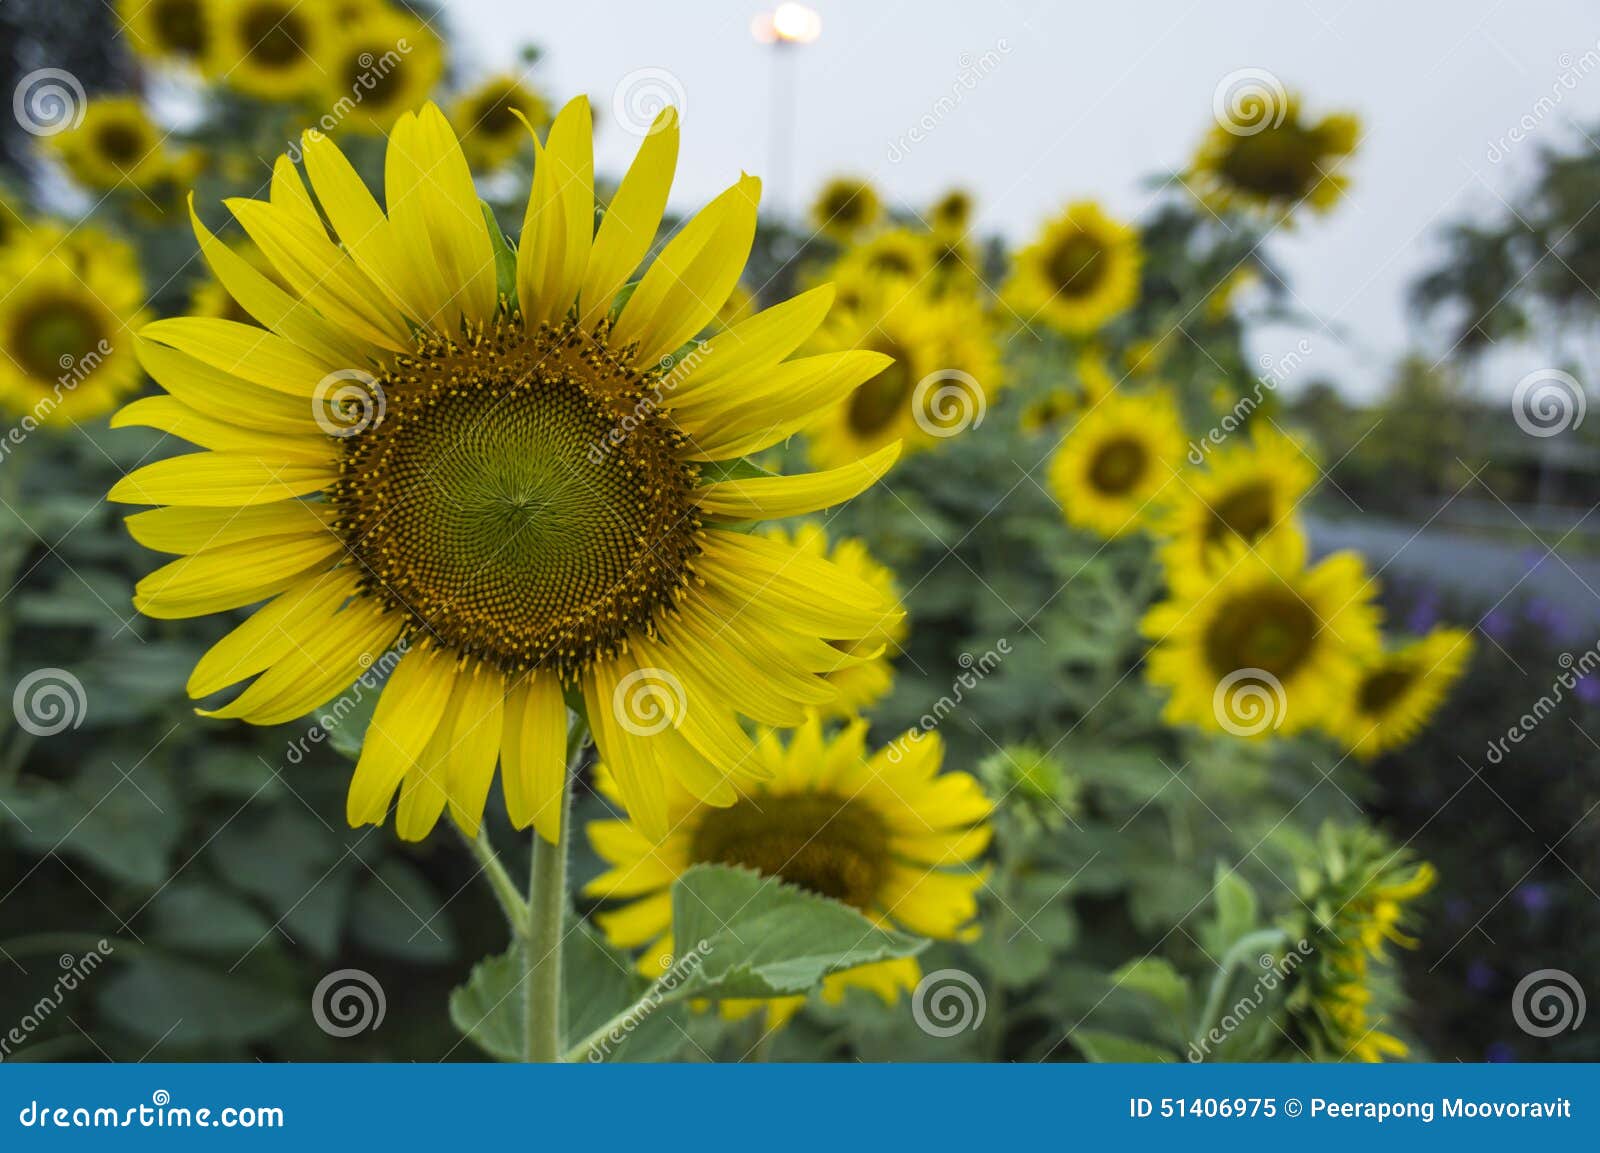 Start a Sunflower Farm